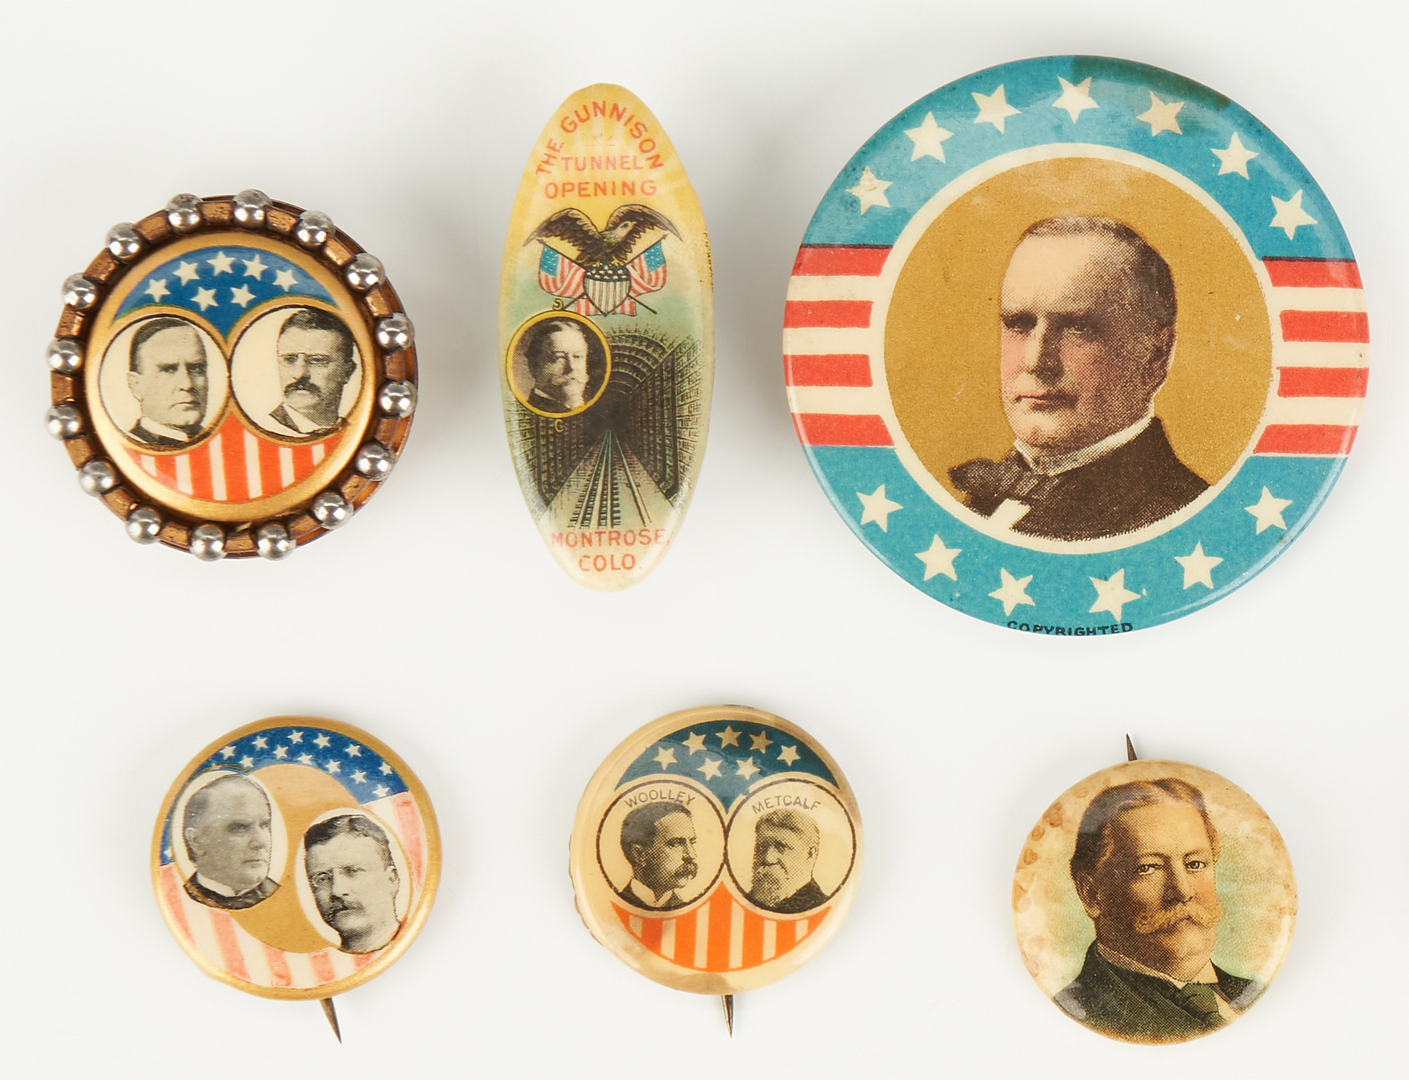 Lot 1010: 18 Political Buttons, incl. McKinley, T. Roosevelt, Taft